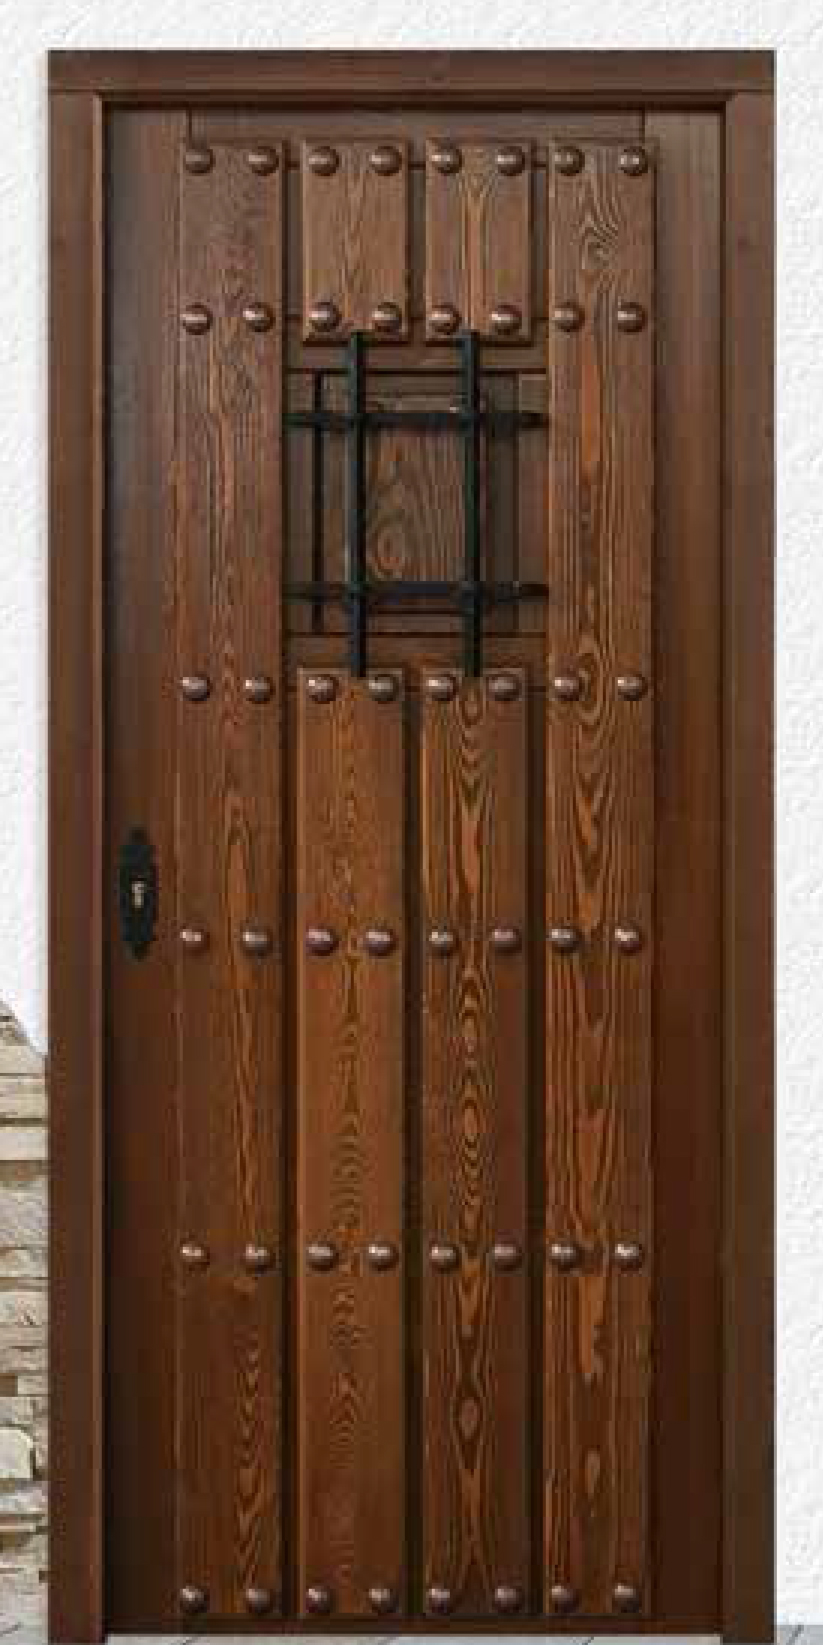 Puertas de calle rústicas - Puertas de exterior rusticas